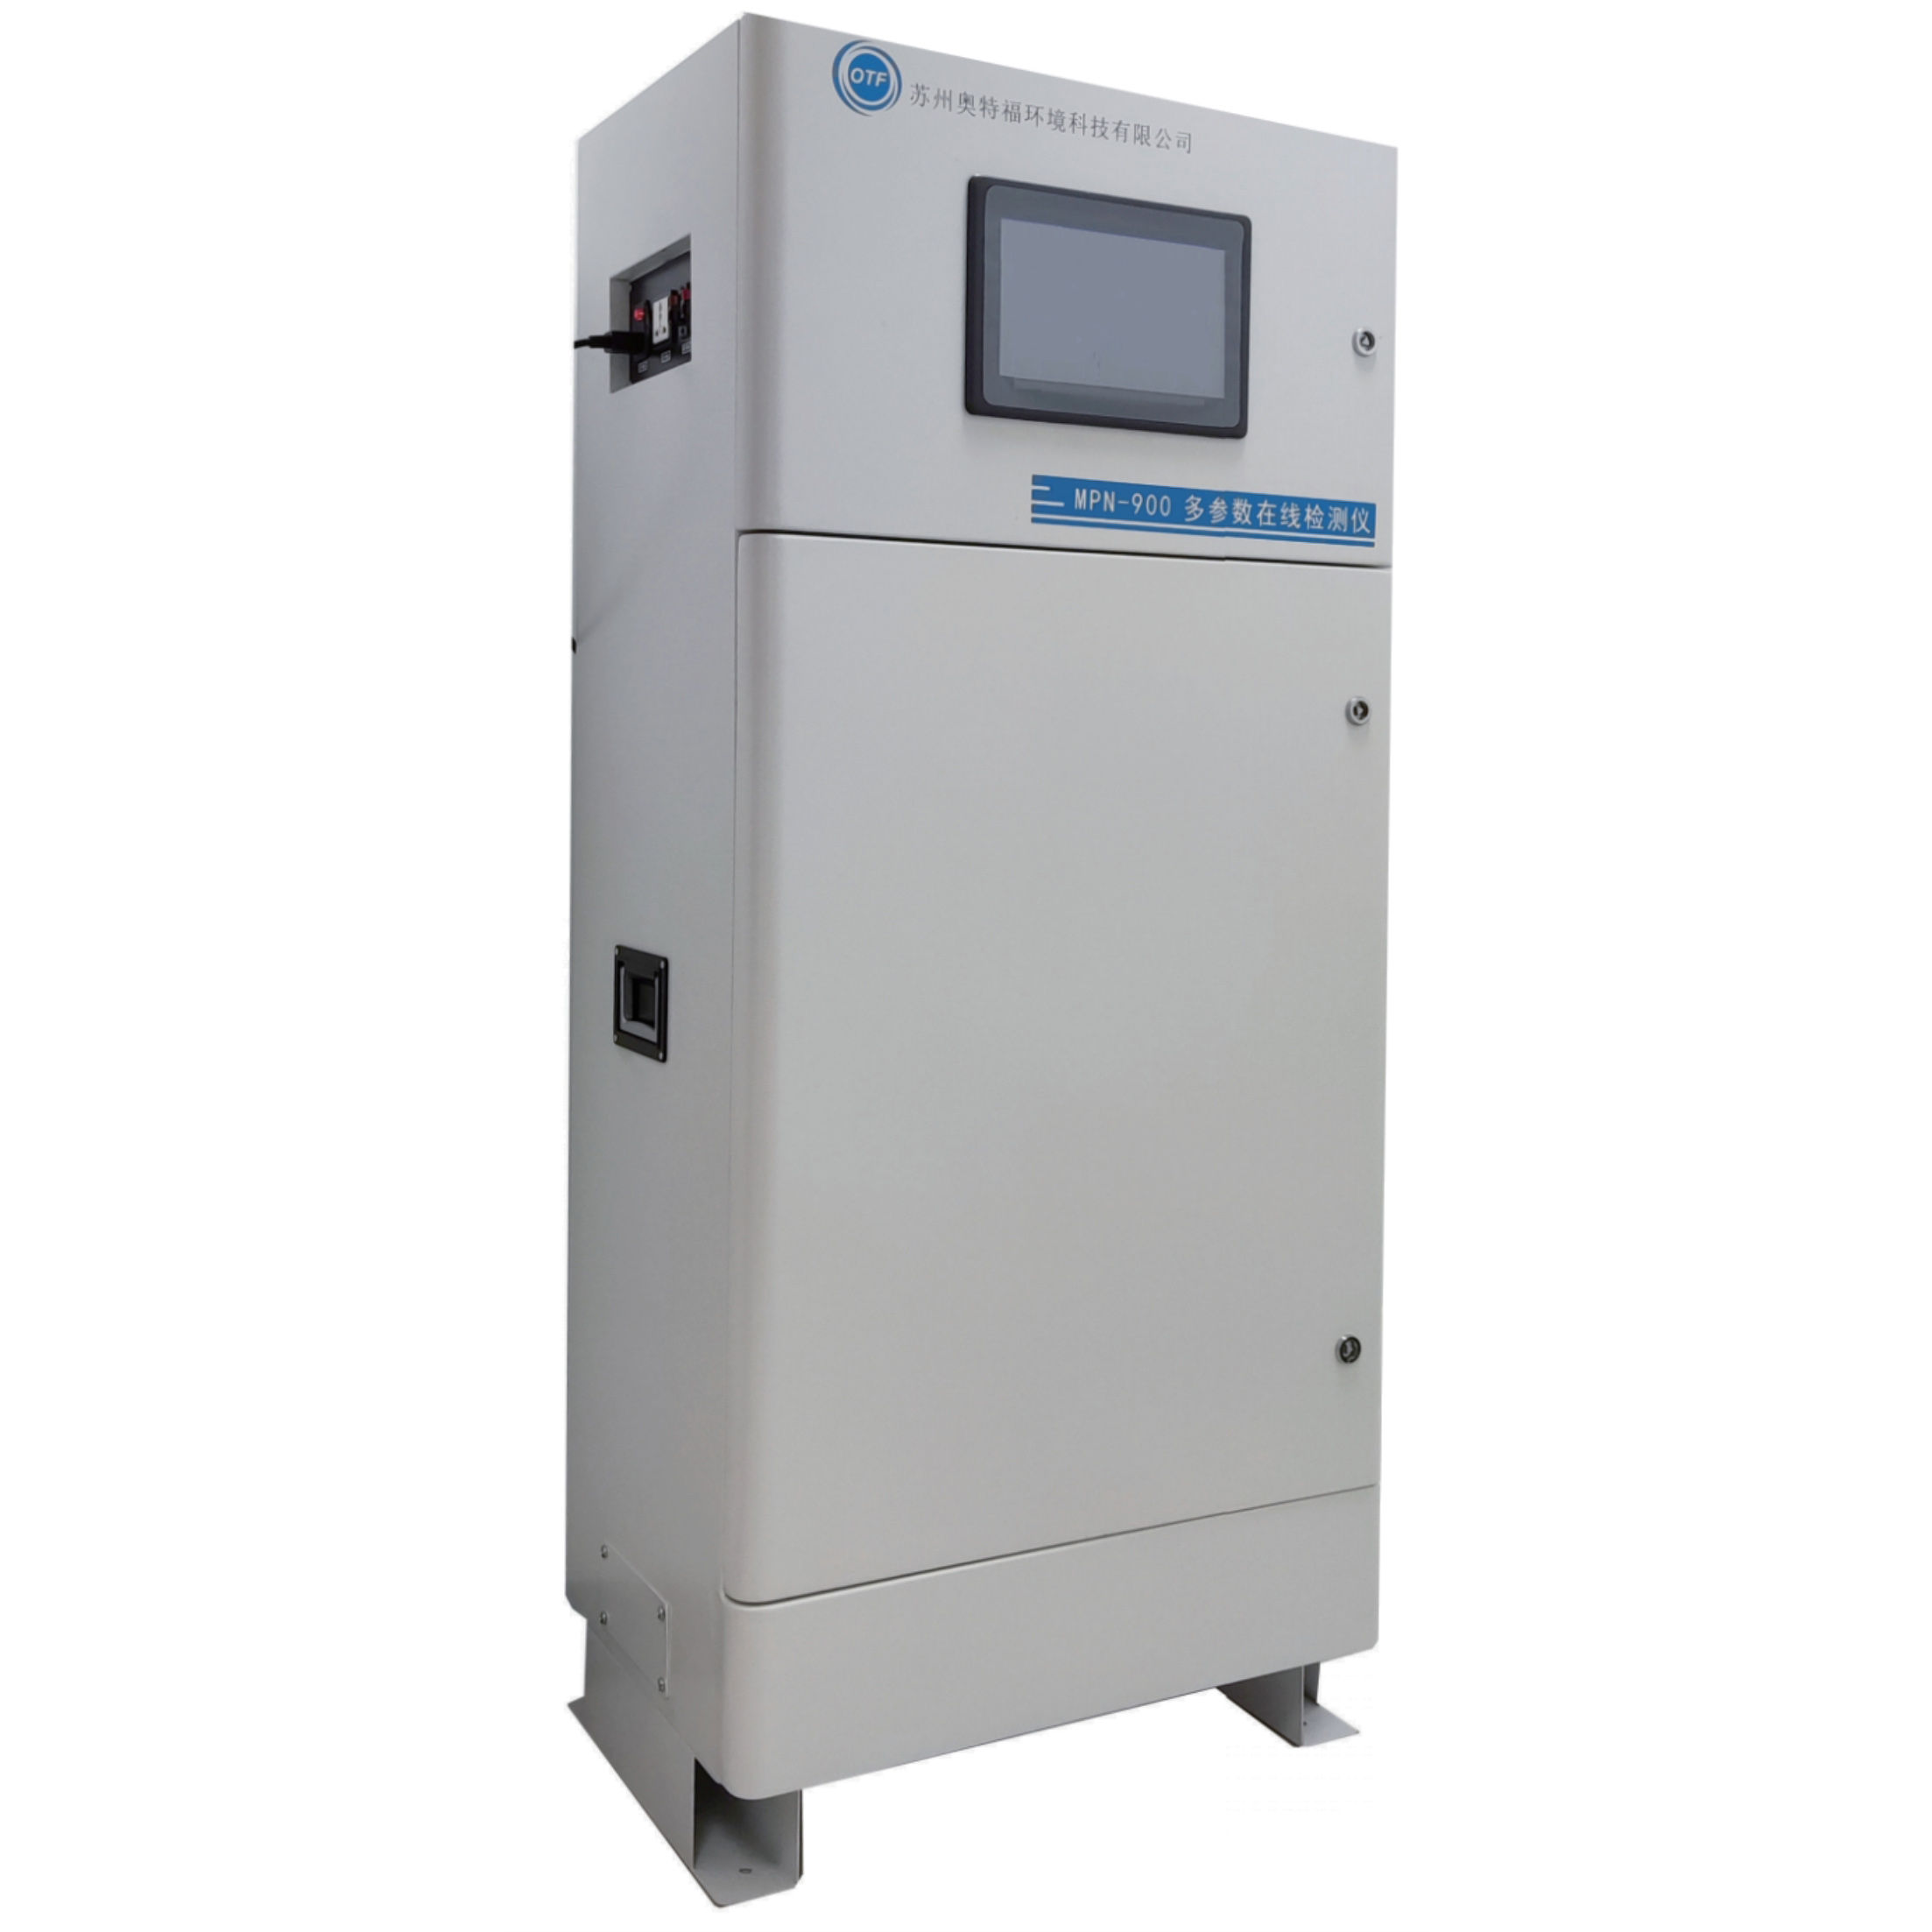 MPN-900浊度余氯水质多参数在线检测系统